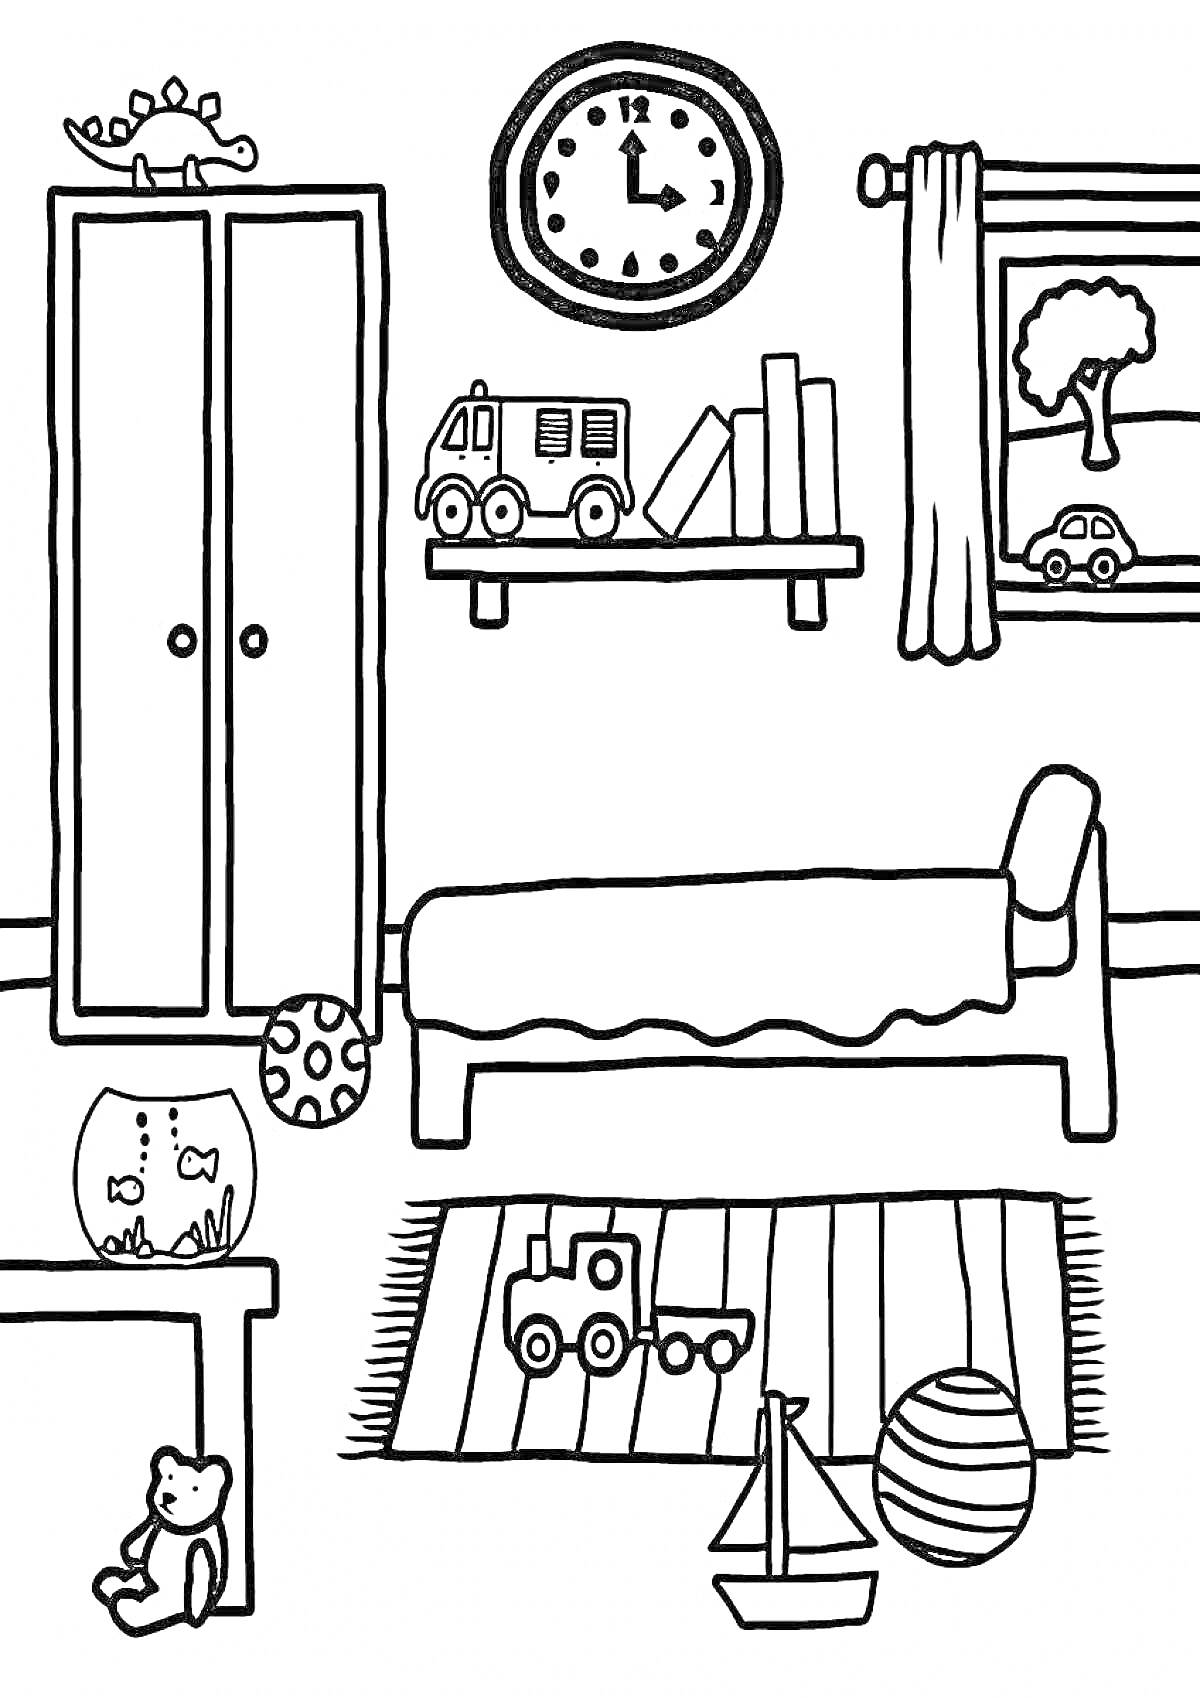 Раскраска Детская комната с мебелью и игрушками Элементы на фото: шкаф с игрушечным динозавром сверху, часы на стене, полка с книгами и игрушечной машинкой, кровать, окно с занавесками и видом на дерево, игрушечная машинка на подоконнике, ковер с игрушечной машинко